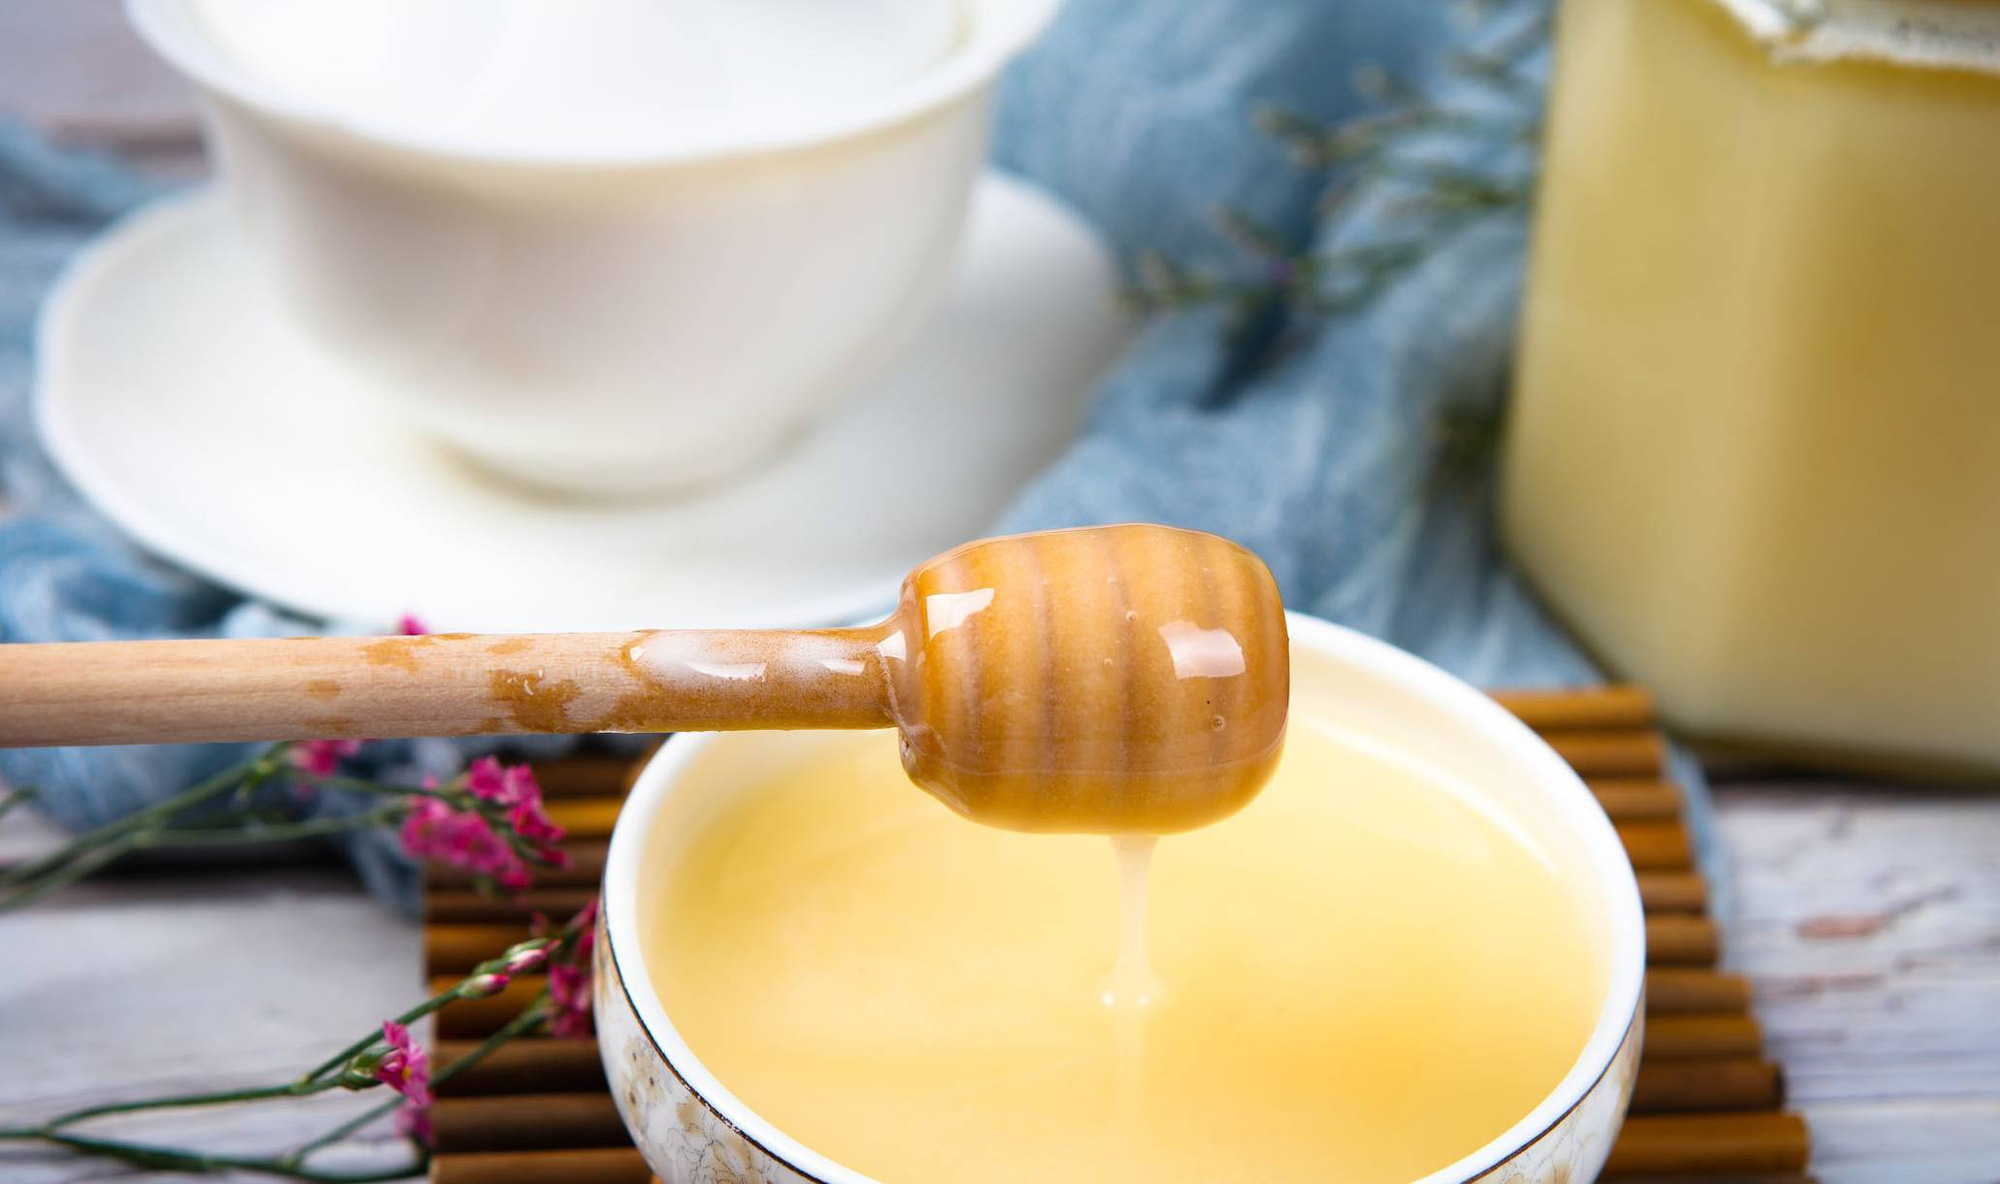 3 nhóm người nếu dùng mật ong không khác nào uống phải 'thuốc độc': Cảnh báo 5 điều cấm kỵ khi uống nước mật ong kẻo rước bệnh, hại thân - Ảnh 4